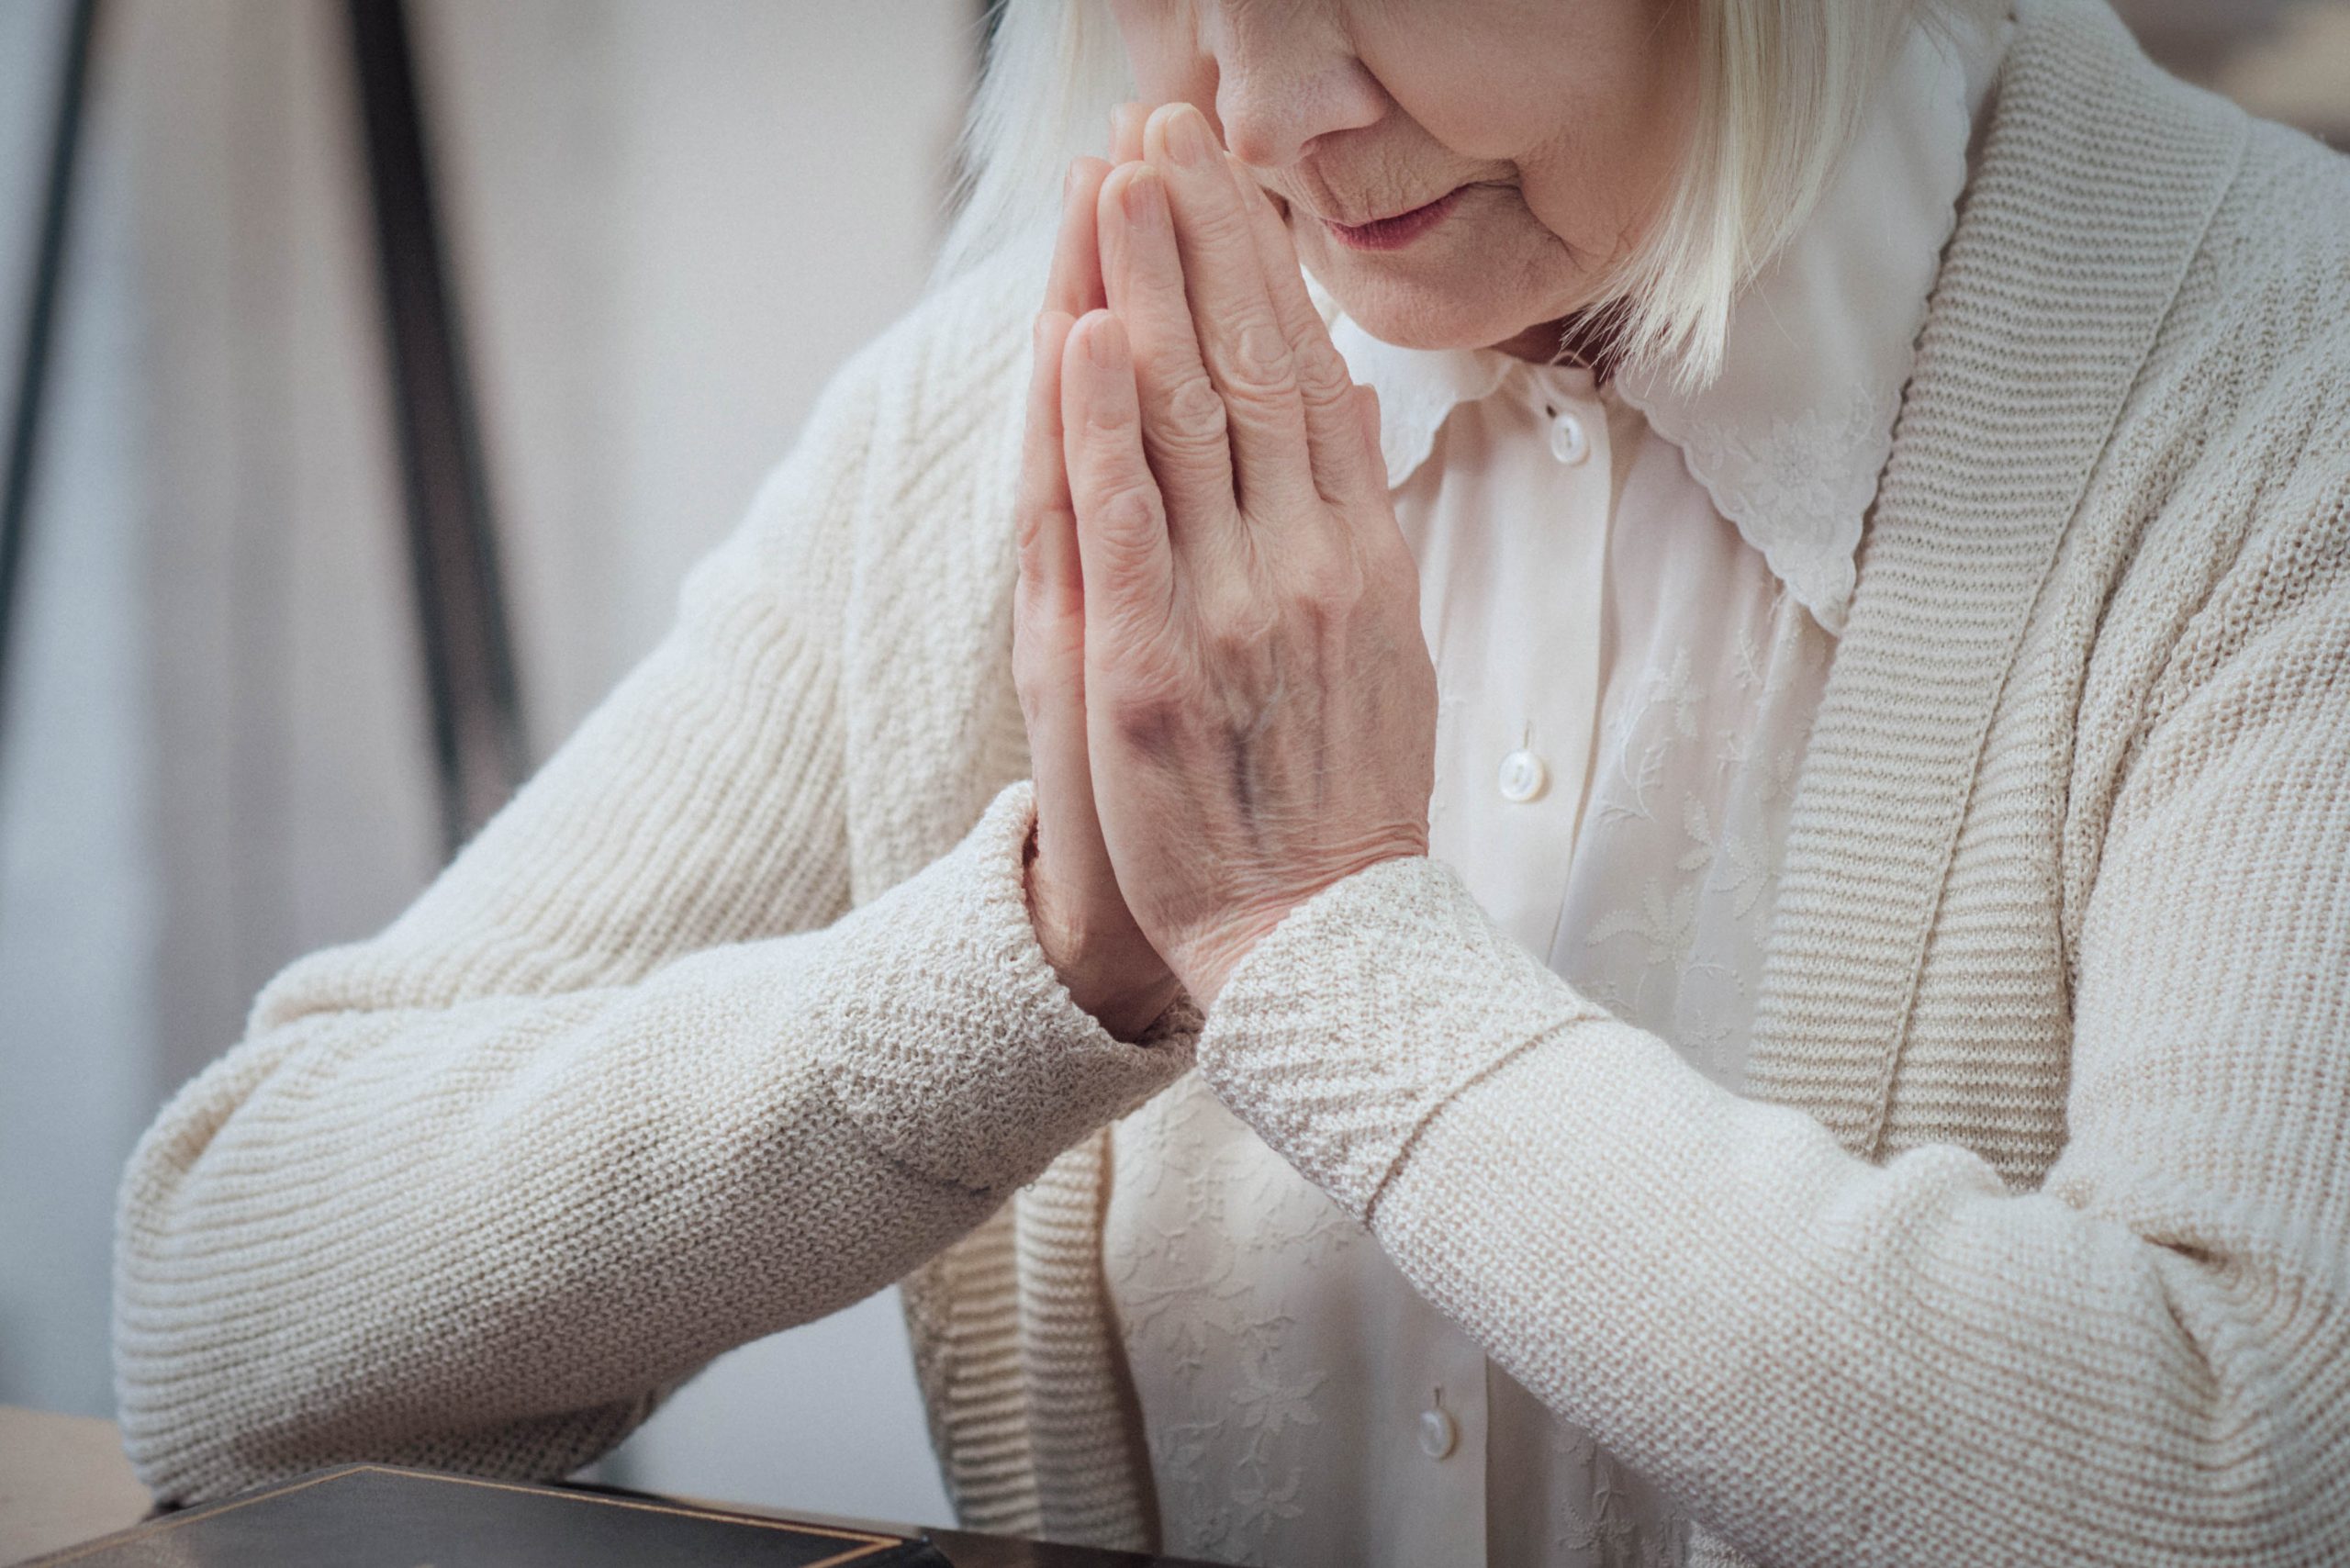 .אישה יושבת ומצמידה את שתי ידייה בצורת תפילה, אל מול ספר תפילה